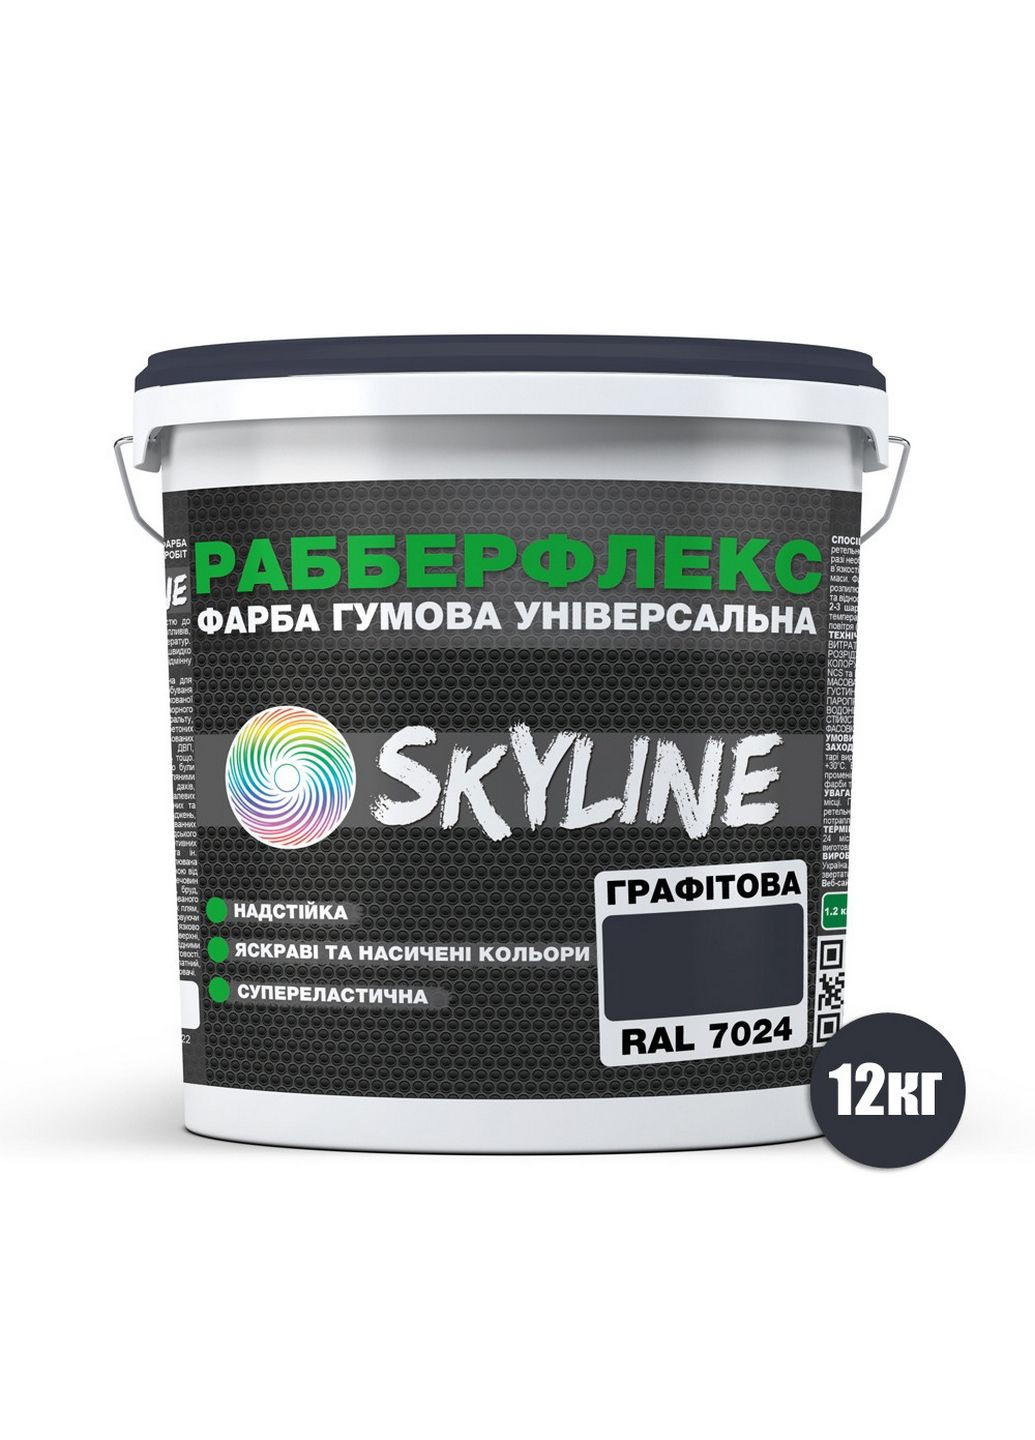 Надстійка фарба гумова супереластична «РабберФлекс» 12 кг SkyLine (289368618)